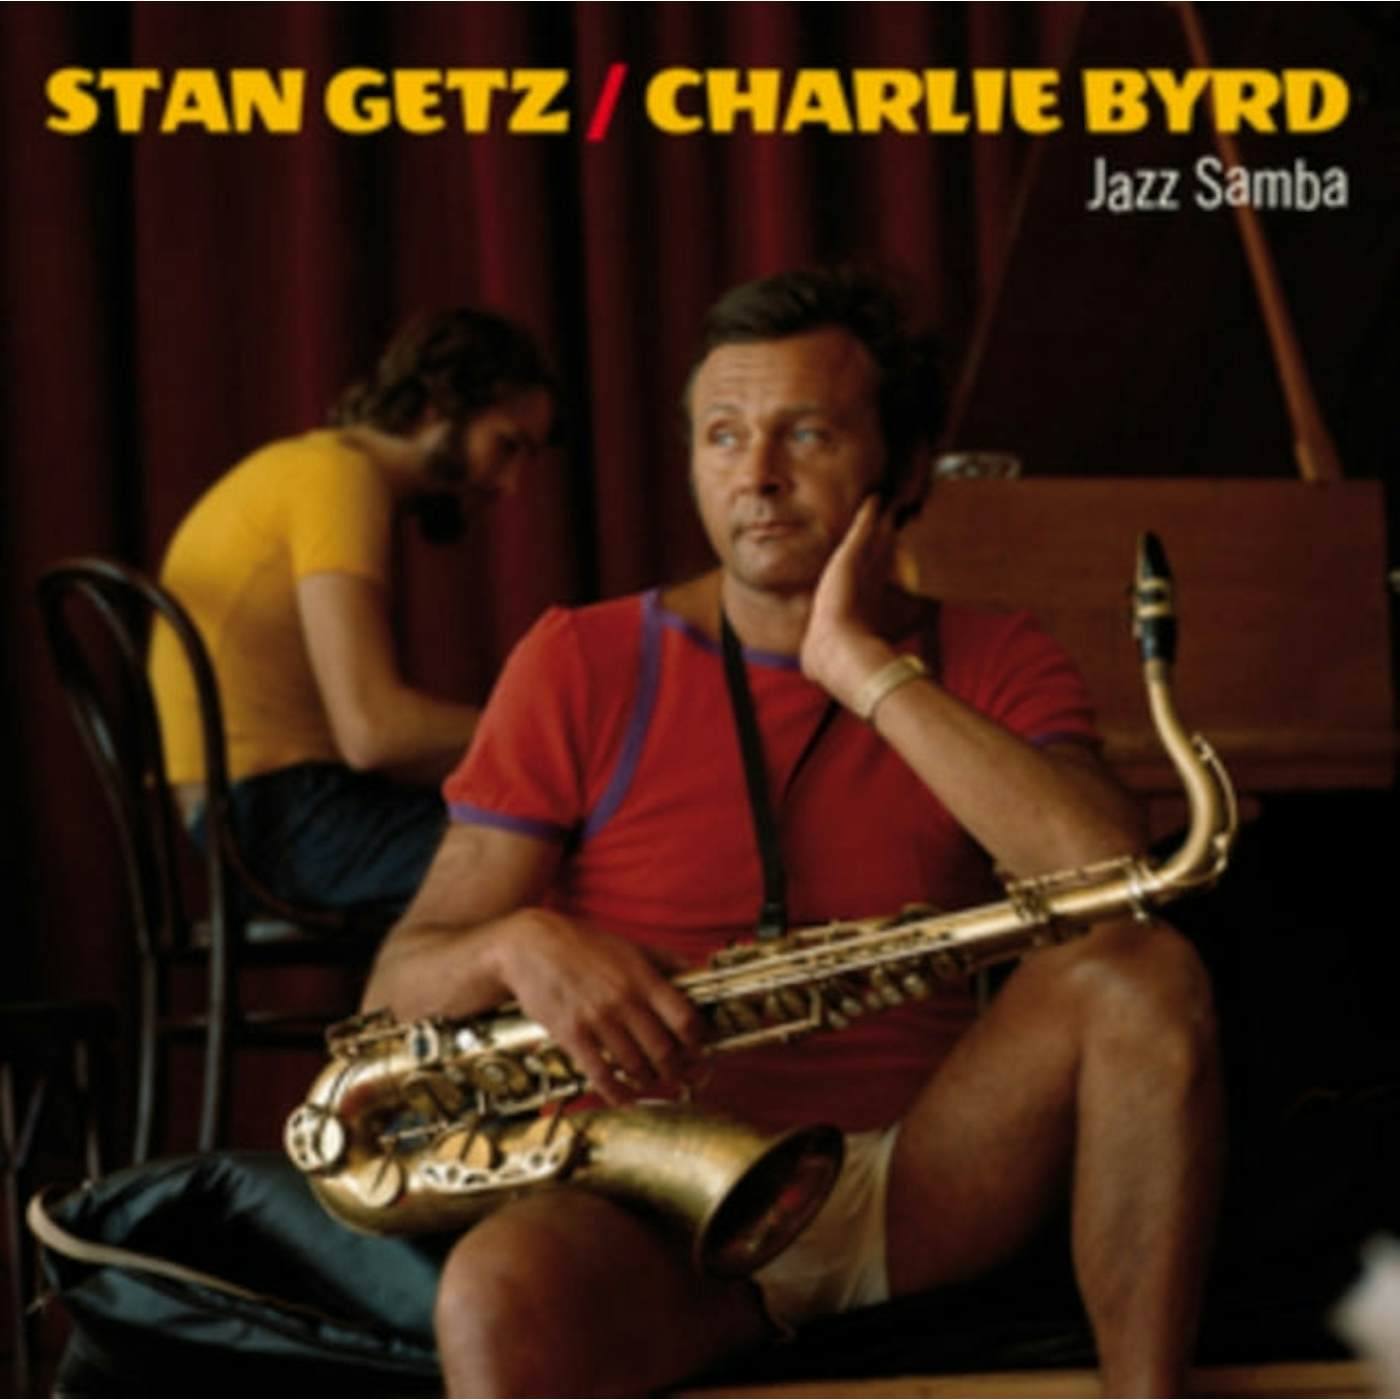 Stan Getz & Charlie Byrd LP Vinyl Record - Jazz Samba + 2 Bonus Tracks (Solid Orange Vinyl)